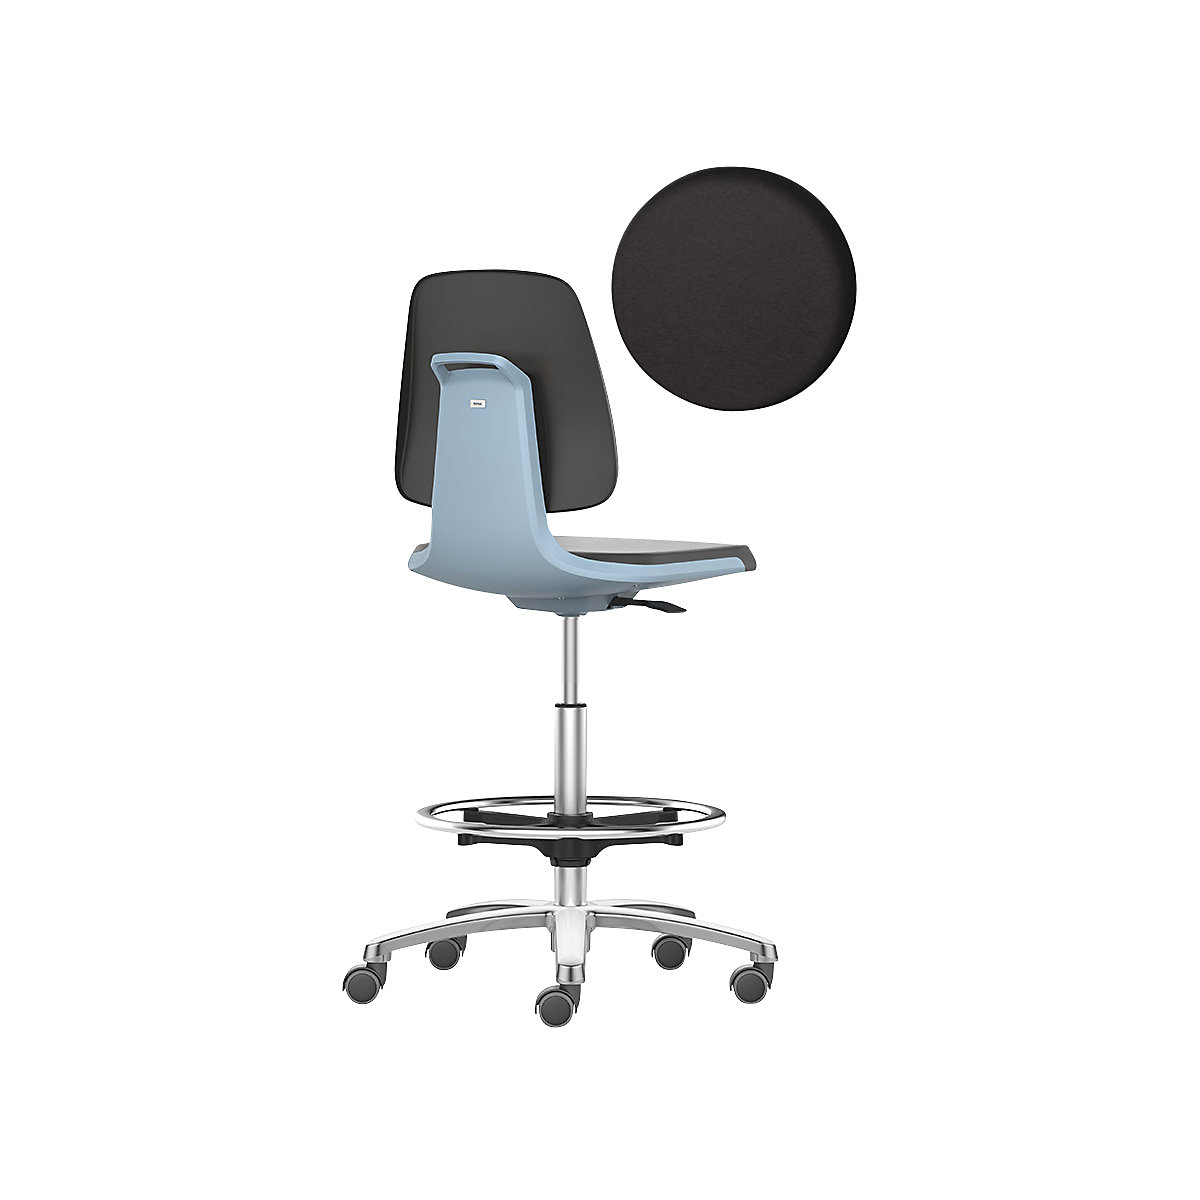 Obrotowe krzesło do pracy LABSIT – bimos, wysokie krzesło z rolkami hamującymi i podpórką na stopy, siedzisko z pianki PU, niebieski-25